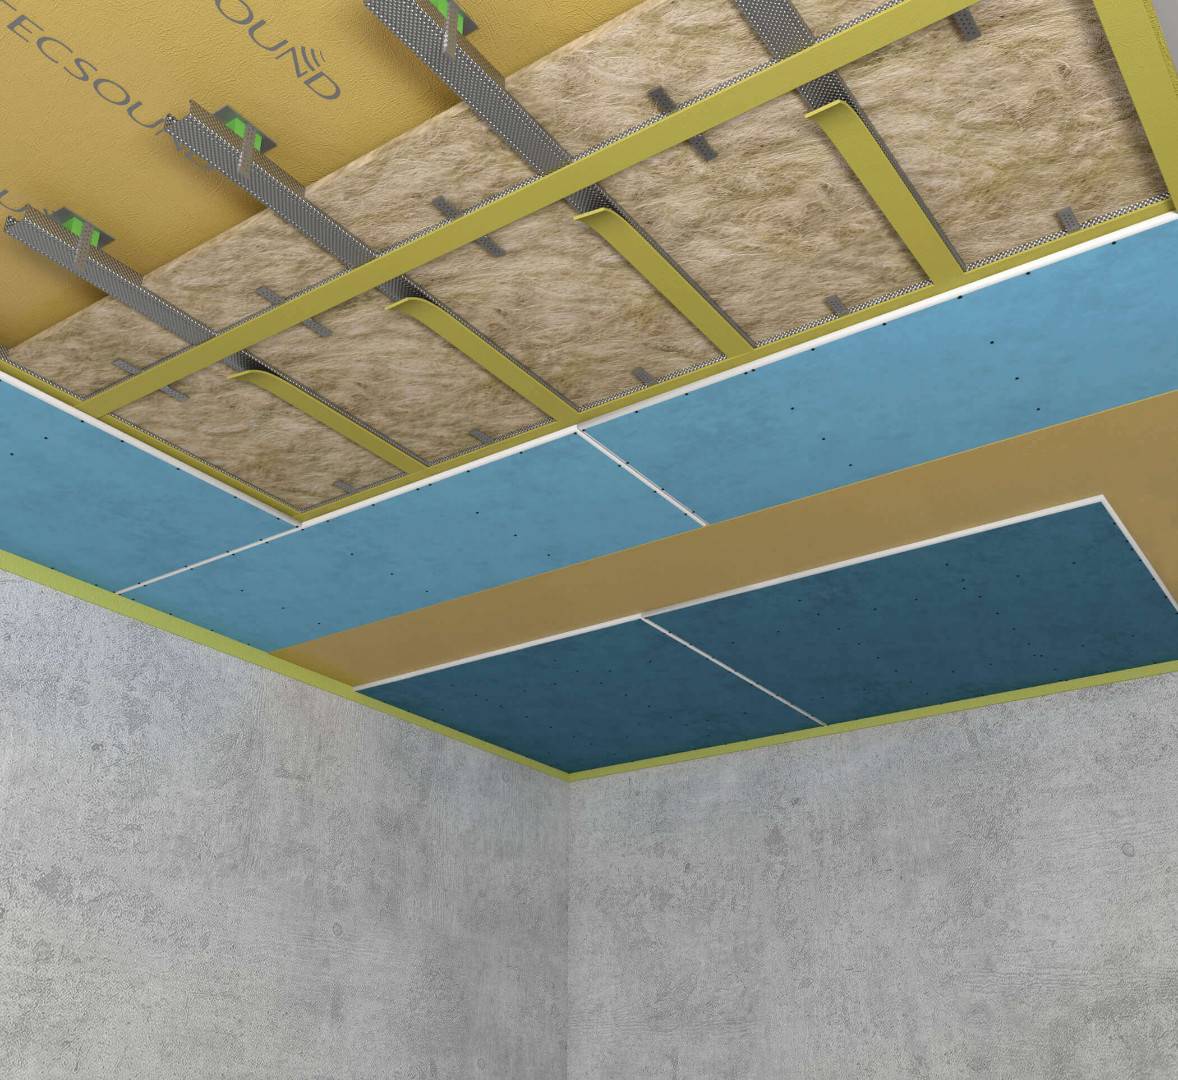 Шумоизоляция потолка в квартире под натяжной потолок: как лучше сделать, отзывы, советы